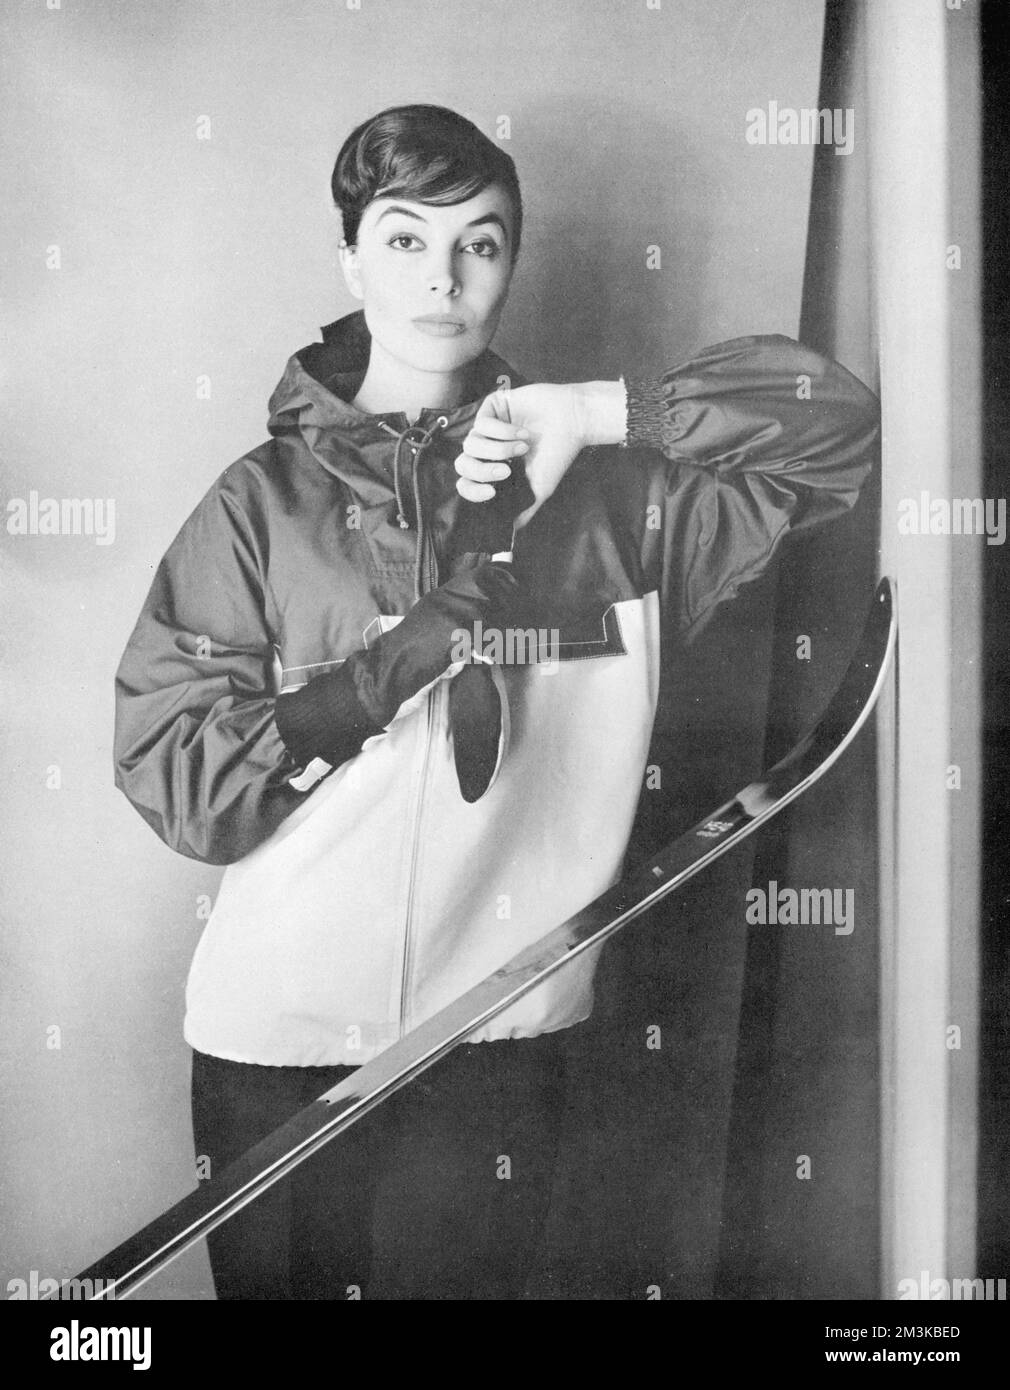 Un modèle pose avec des skis dans une veste en popeline résistante de Gordon Lowe de Debenhams. Date: 1956 Banque D'Images